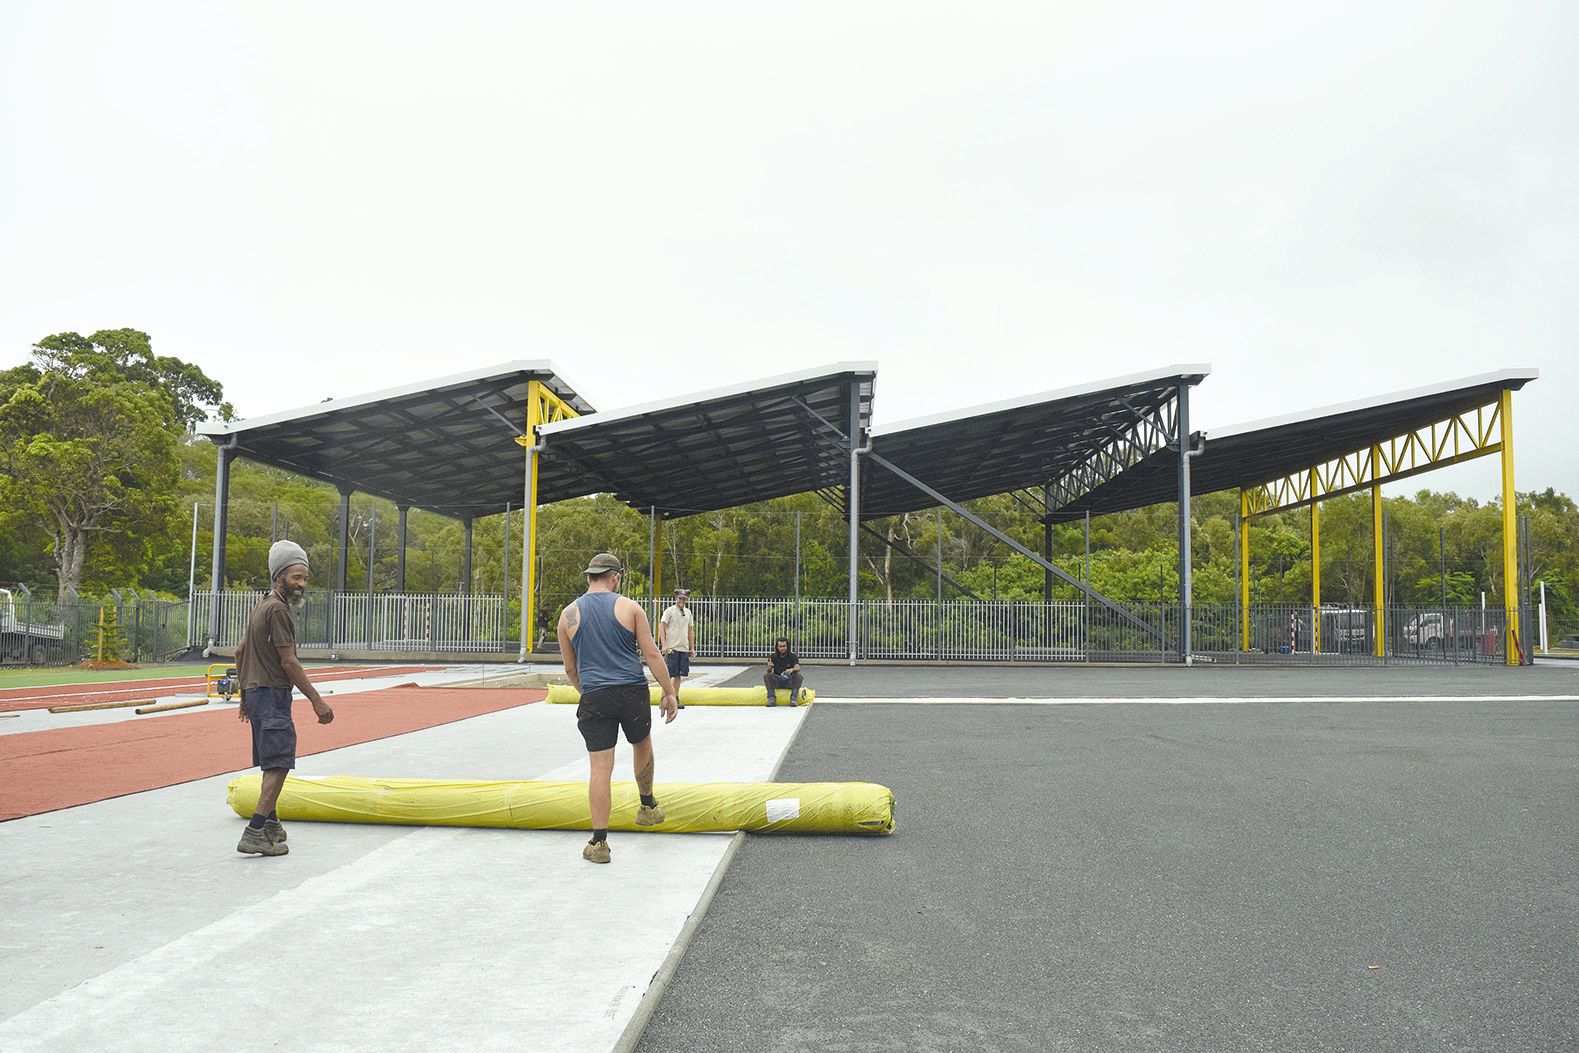 Les ouvriers de la société Home Design paysage terminaient cette  semaine la piste d’athlétisme située entre la halle des sports collectifs et la halle de gymnastique.